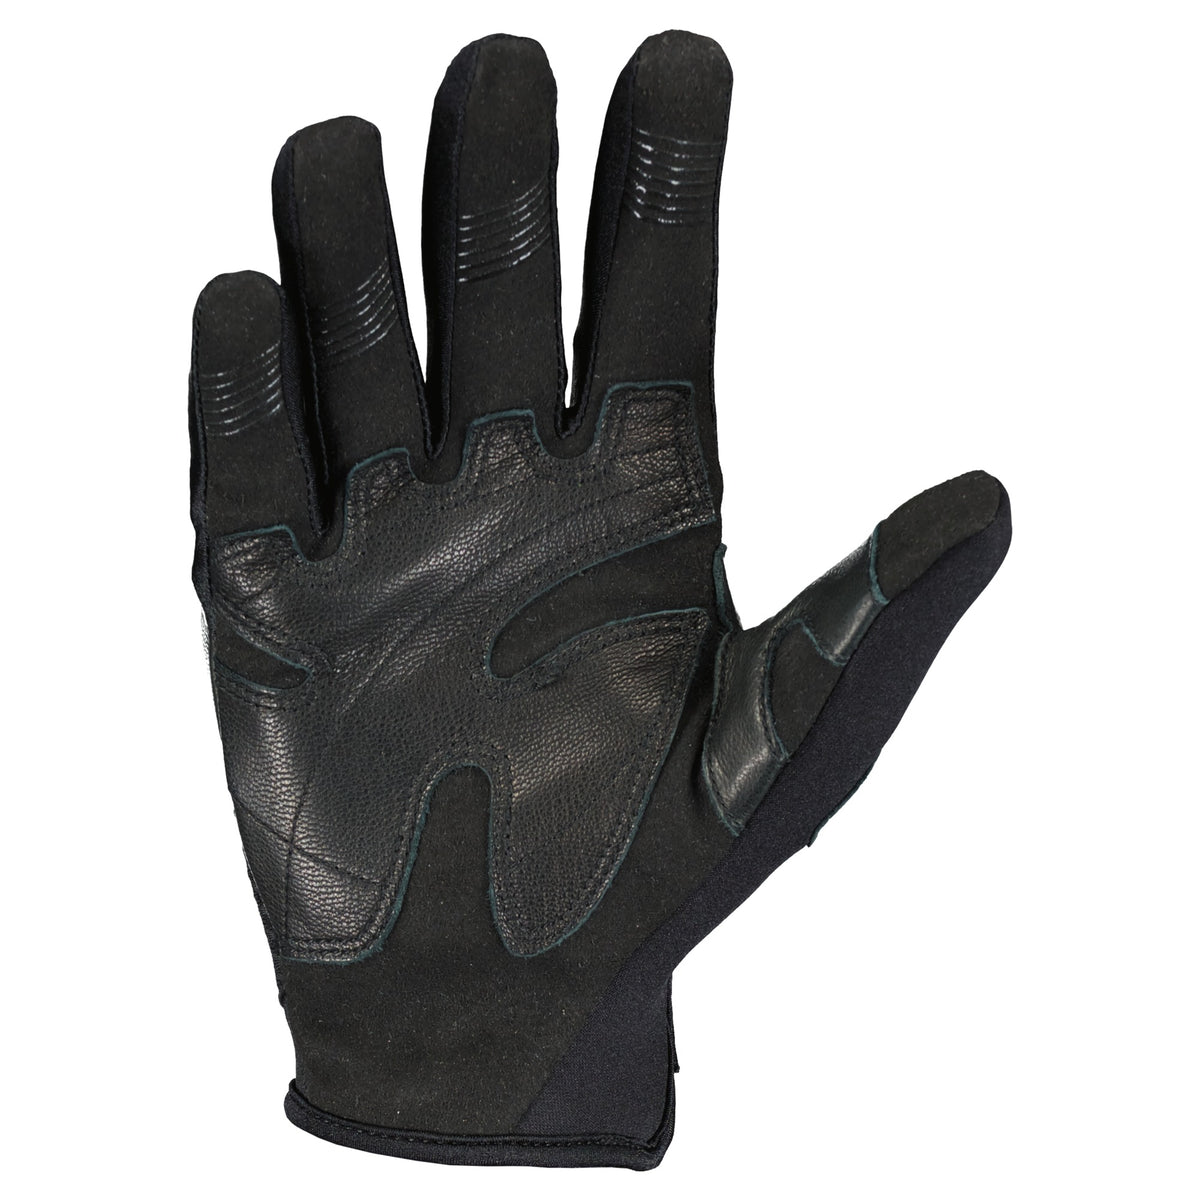 Scott Assault II Gloves